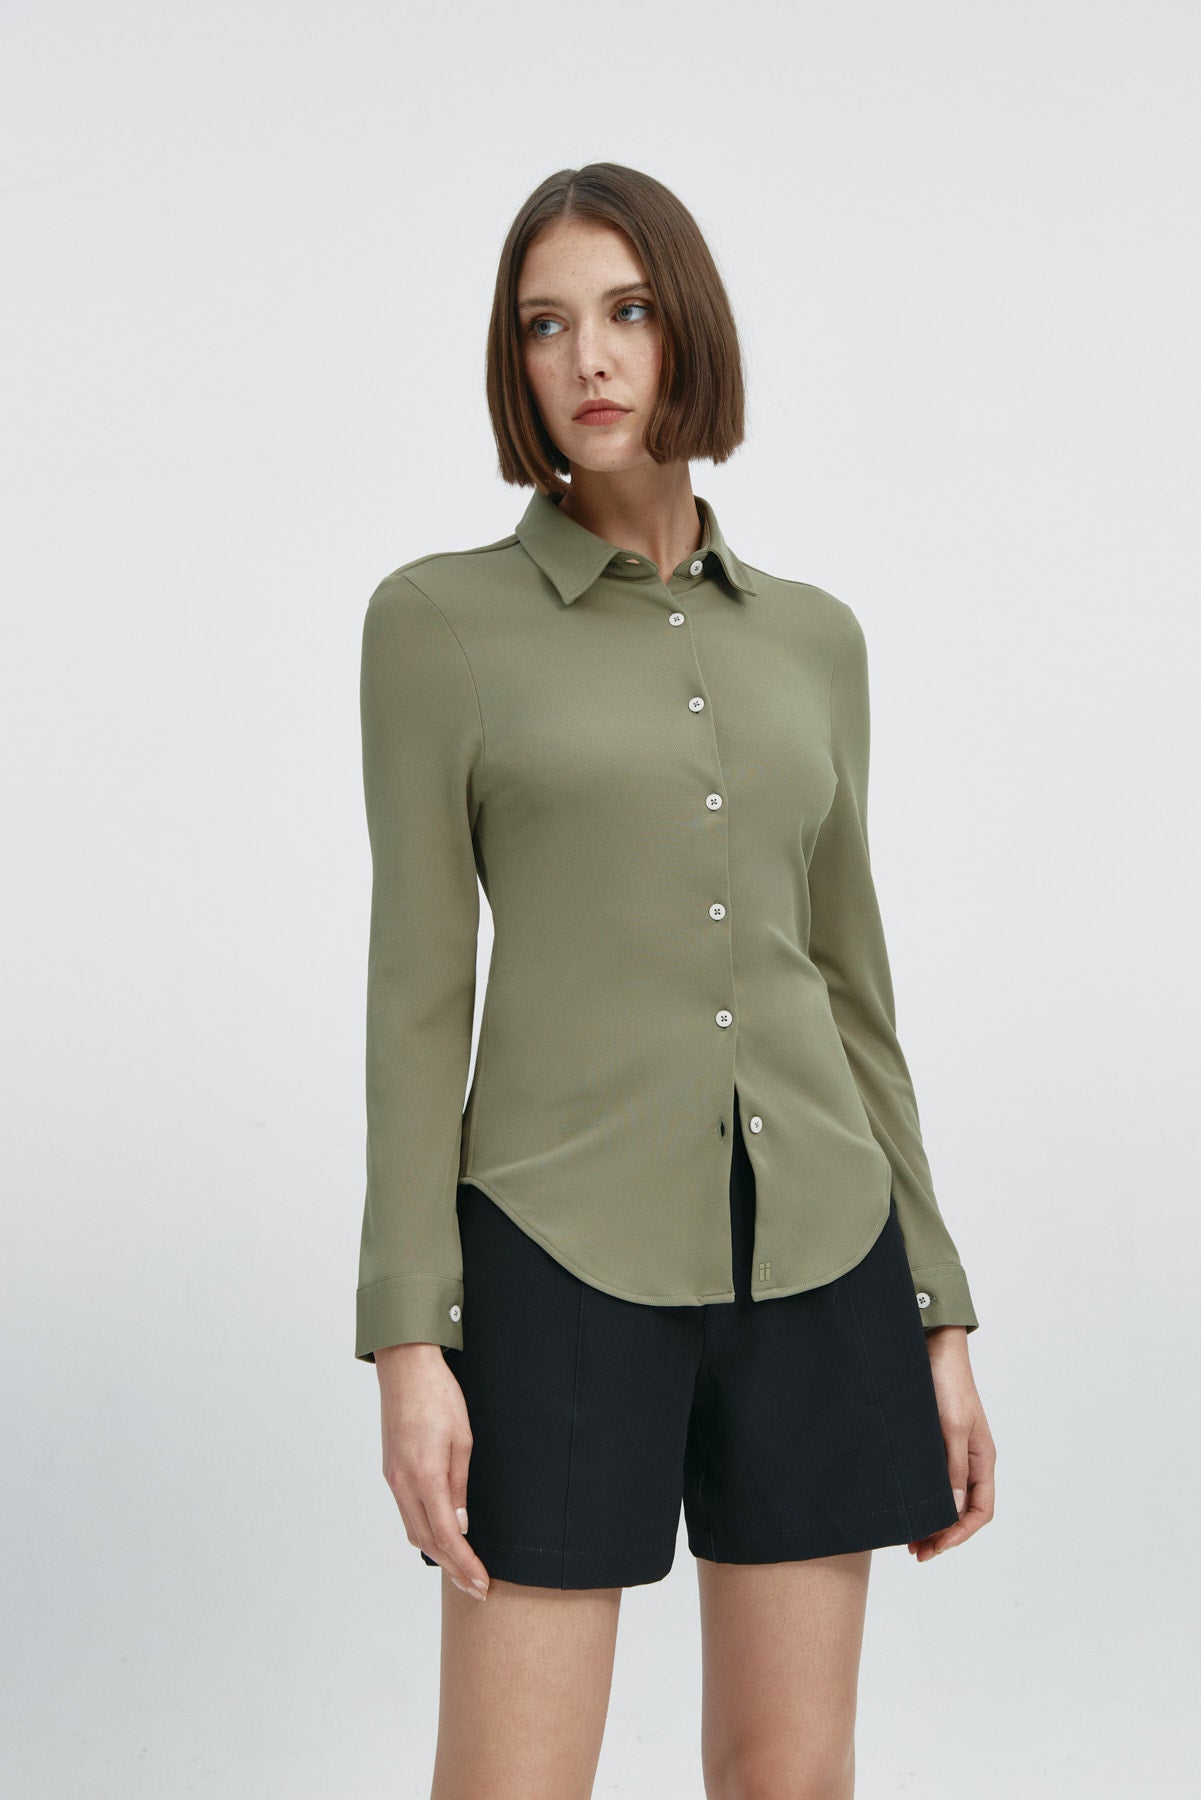  Camisa para mujer slim color verde malaquita, básica y versátil. Foto frente